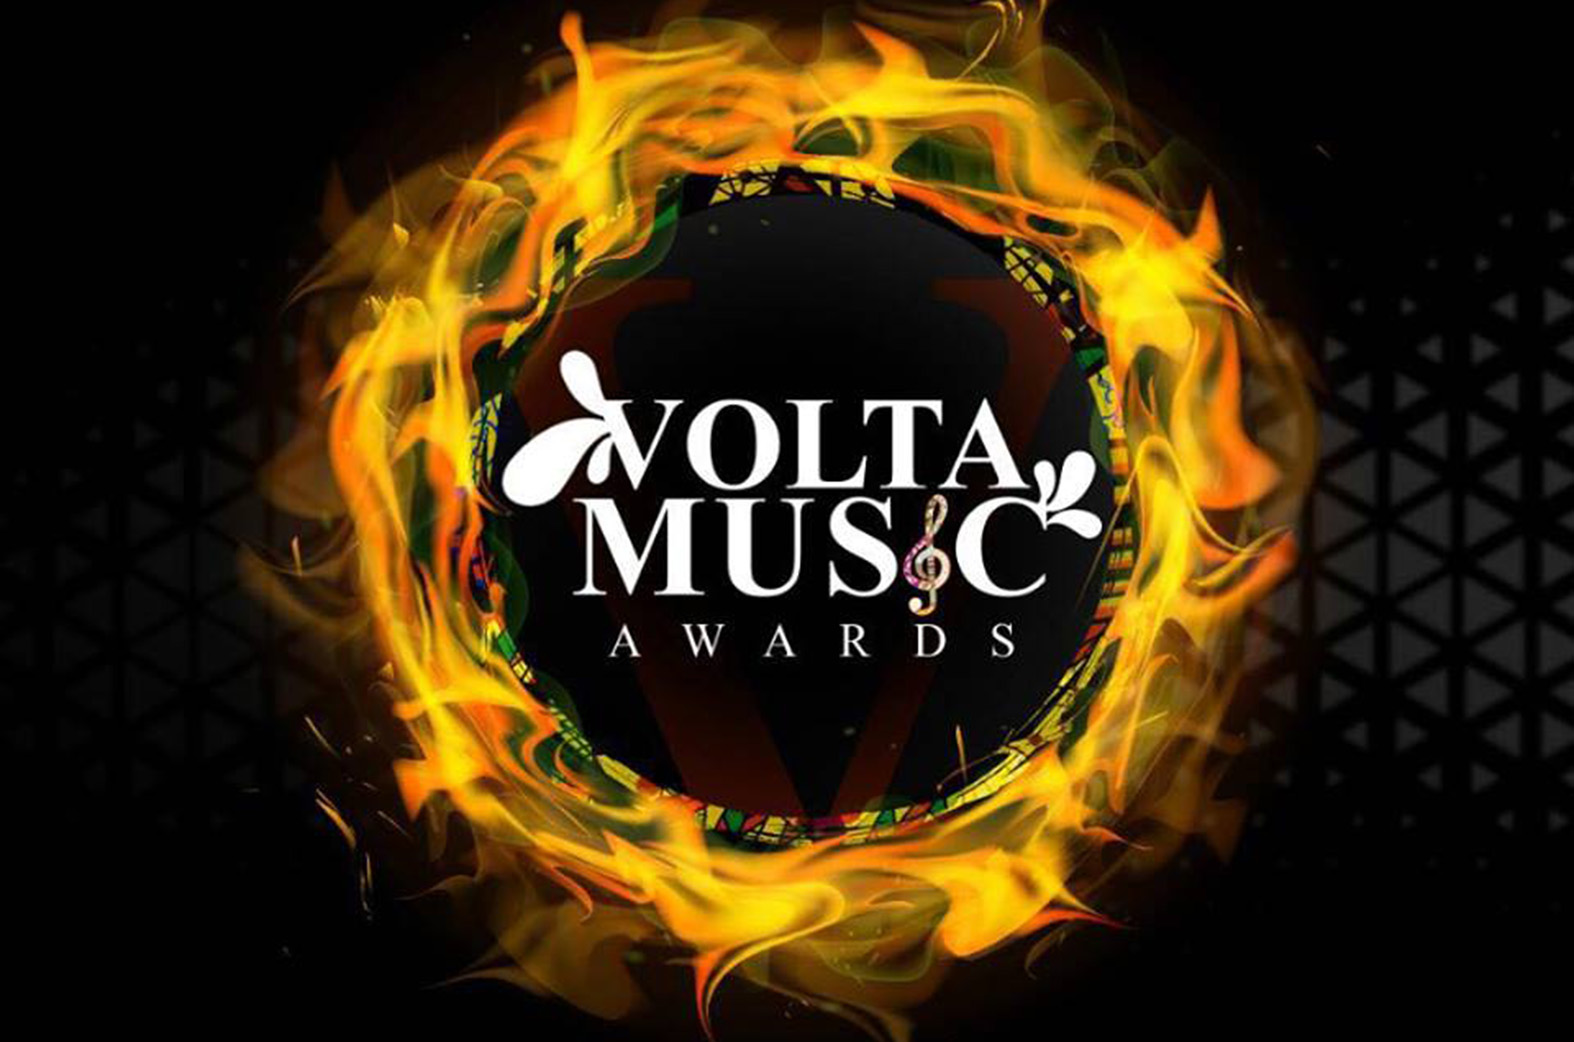 Full list of 2018 Volta Music Awards Nominees